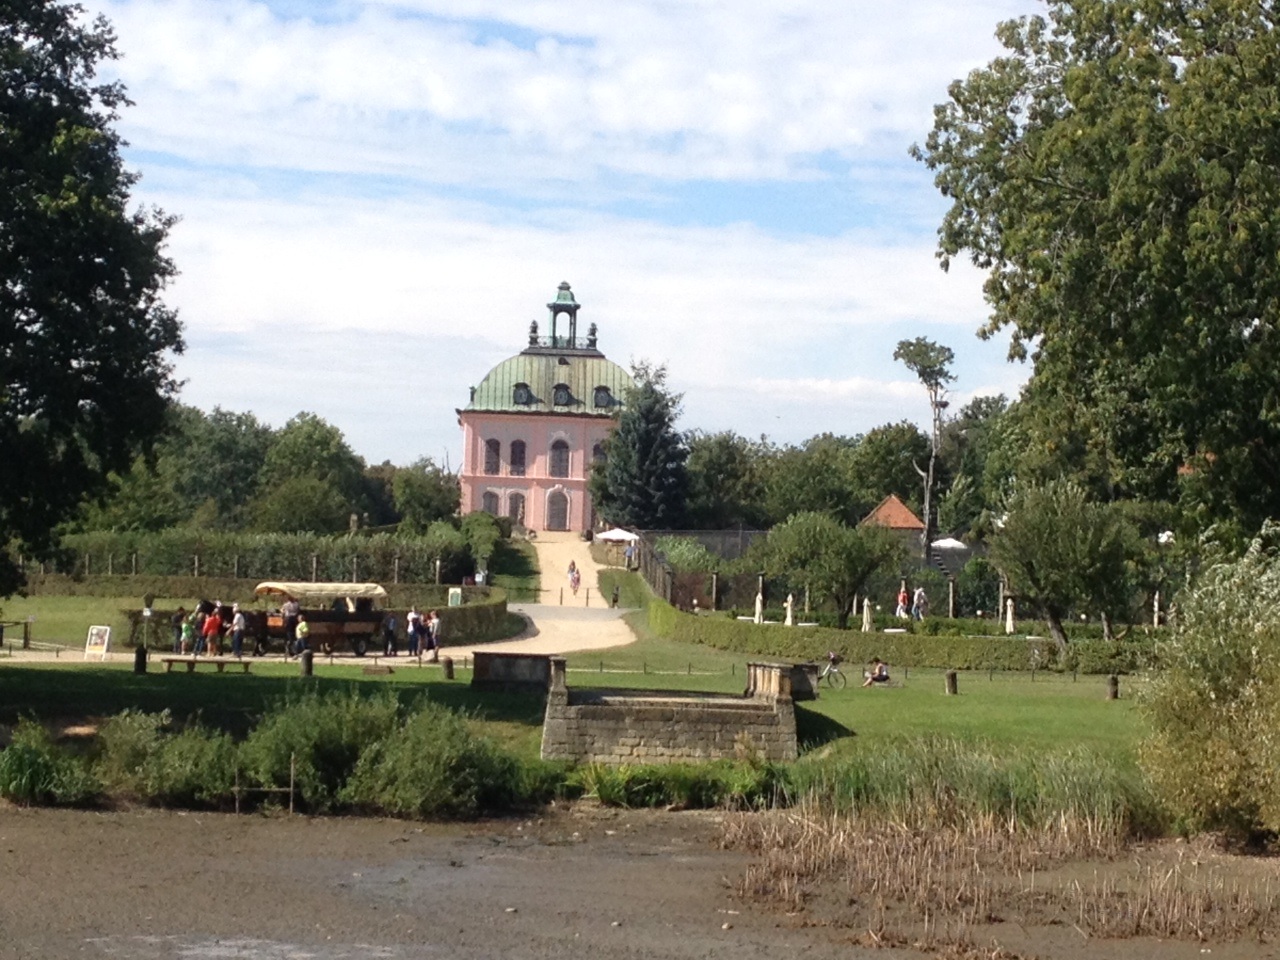 Bild 9 Staatliche Schlösser, Burgen und Gärten Sachsen in Moritzburg